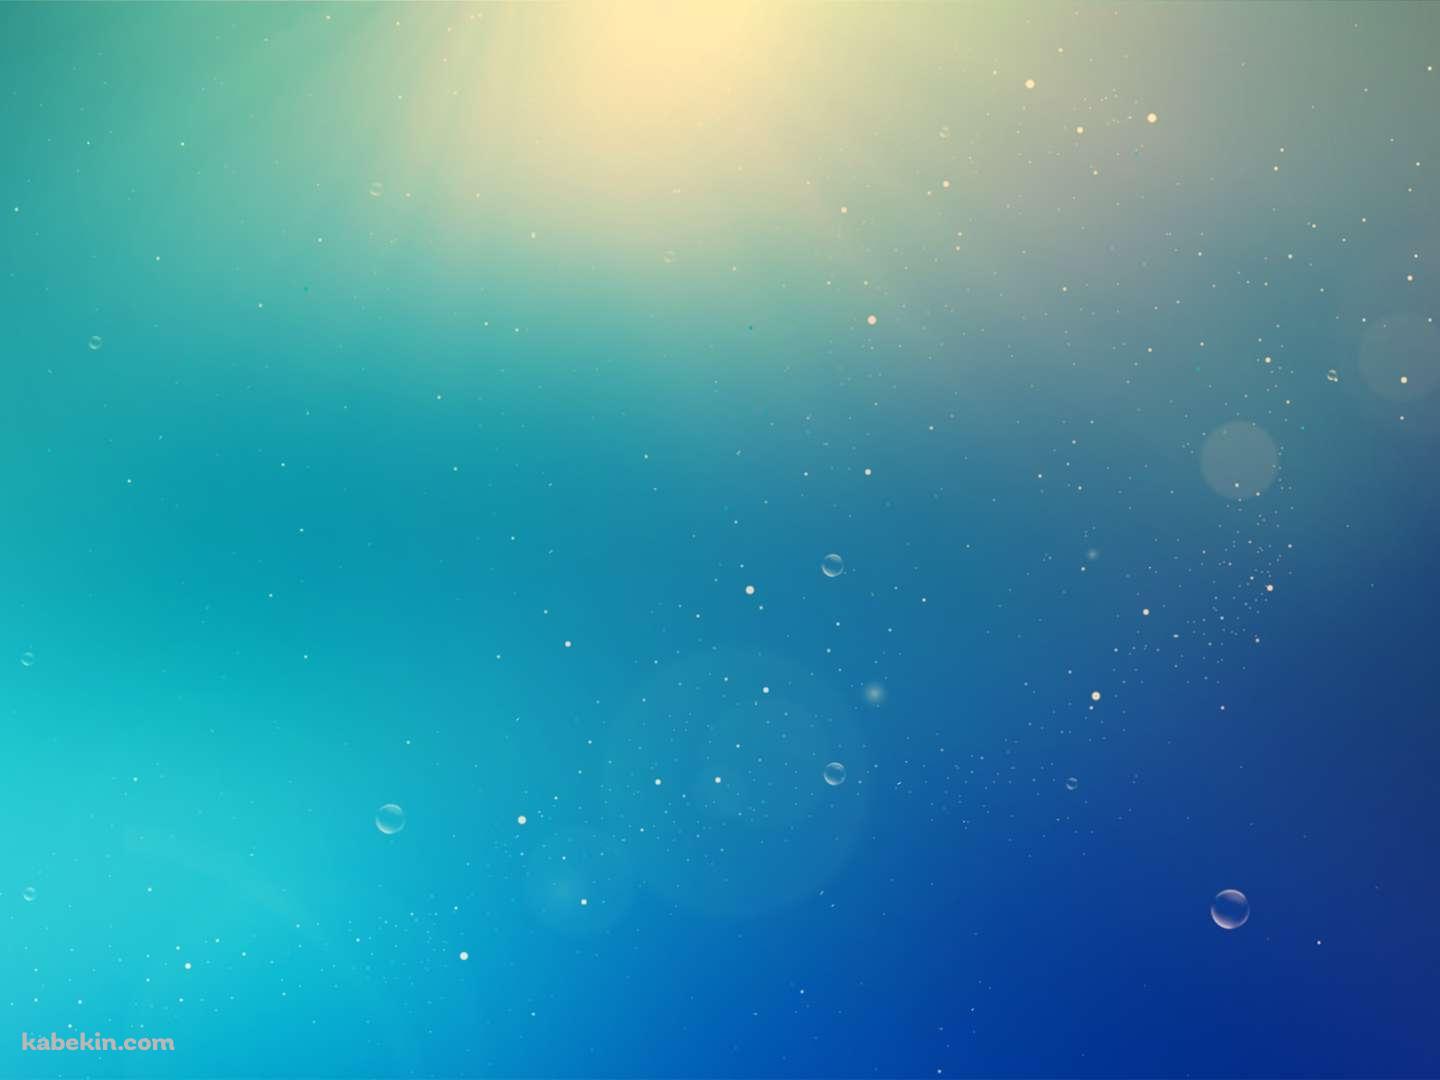 青と水泡の壁紙(1440px x 1080px) 高画質 PC・デスクトップ用